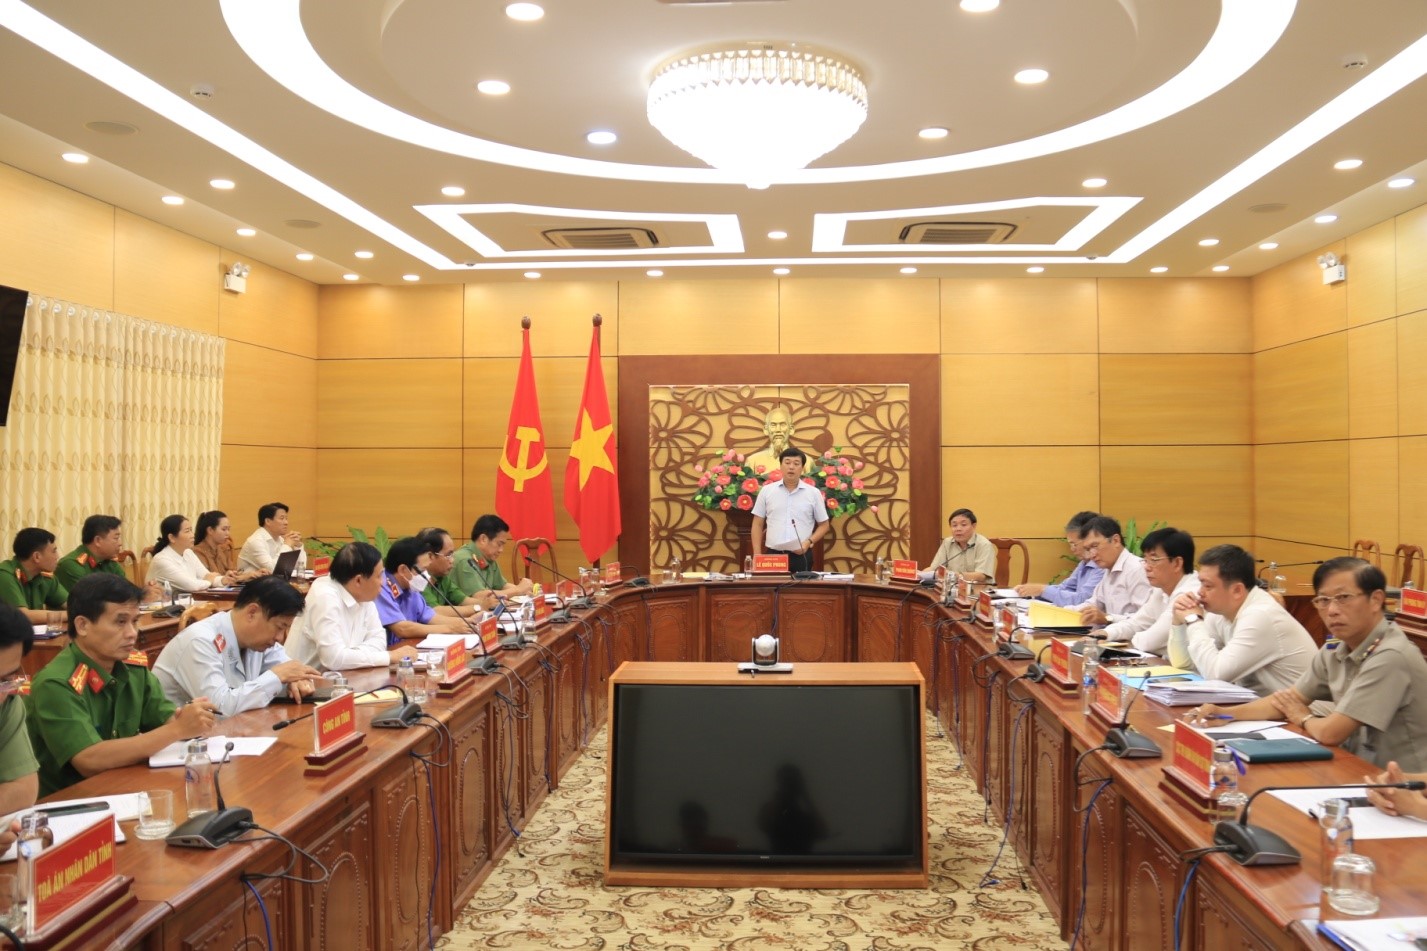 Đồng chí Lê Quốc Phong, Uỷ viên Trung ương Đảng, Bí thư Tỉnh ủy Đồng Tháp  phát biểu kết luận tại buổi làm việc với Ban Nội chính Tỉnh ủy và các cơ quan tư pháp Tỉnh